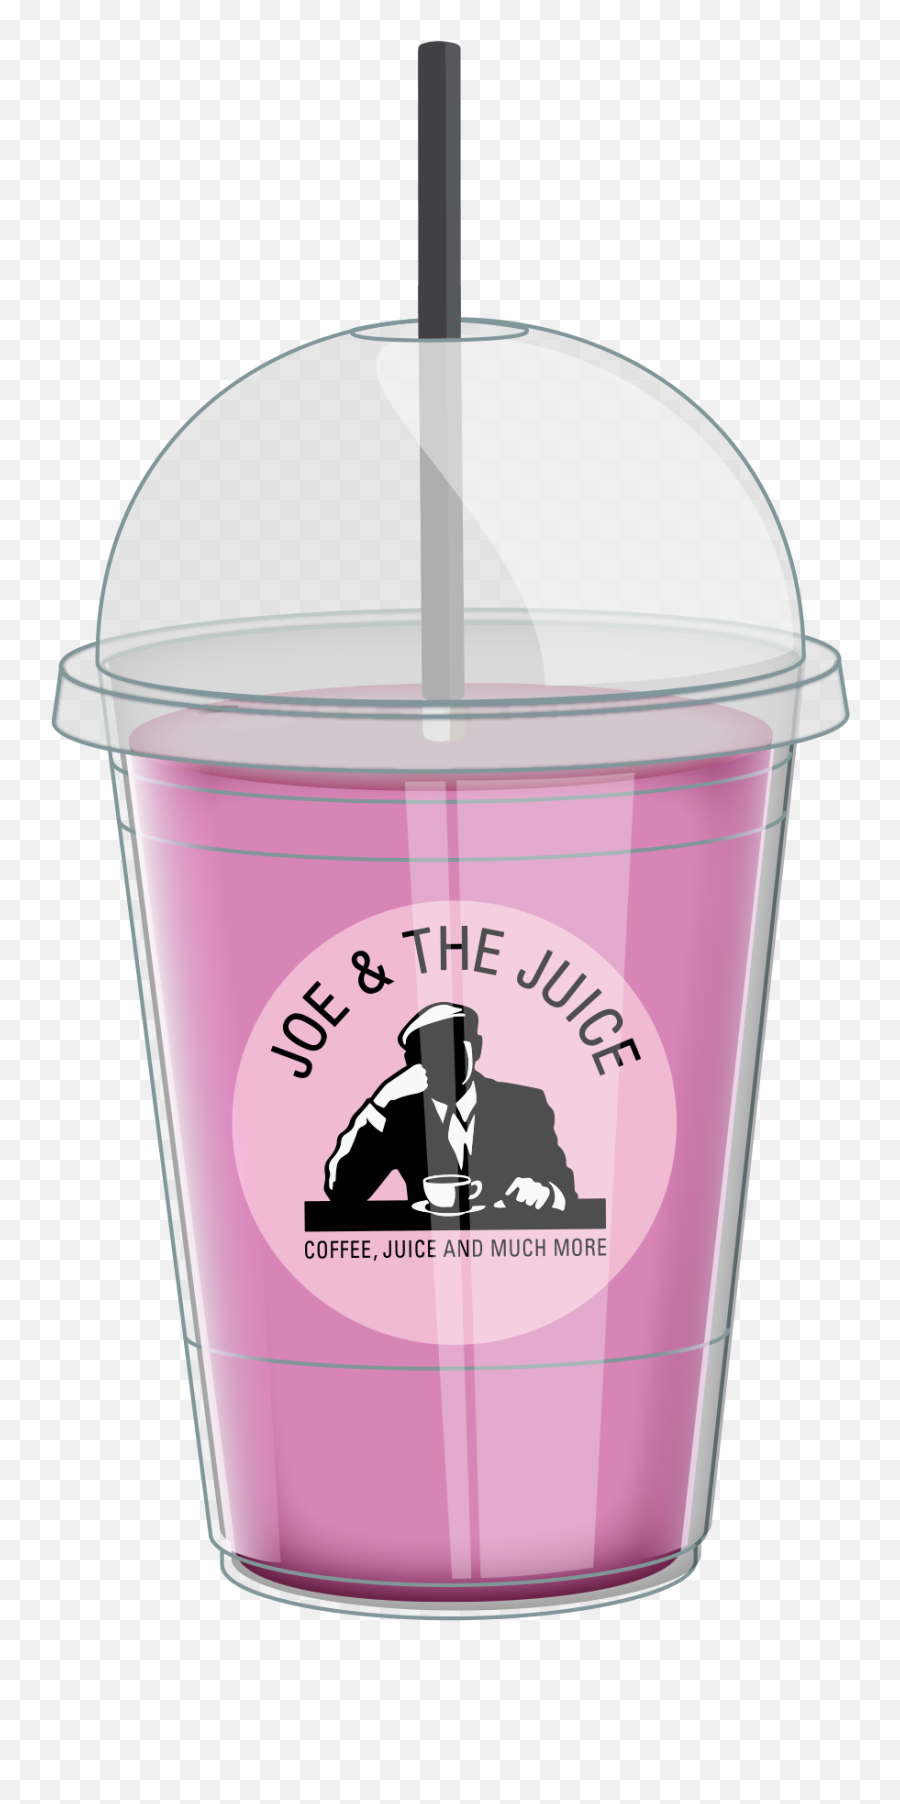 Joemojis - Joe And The Juice Mojis Emoji,Emoji E Juice